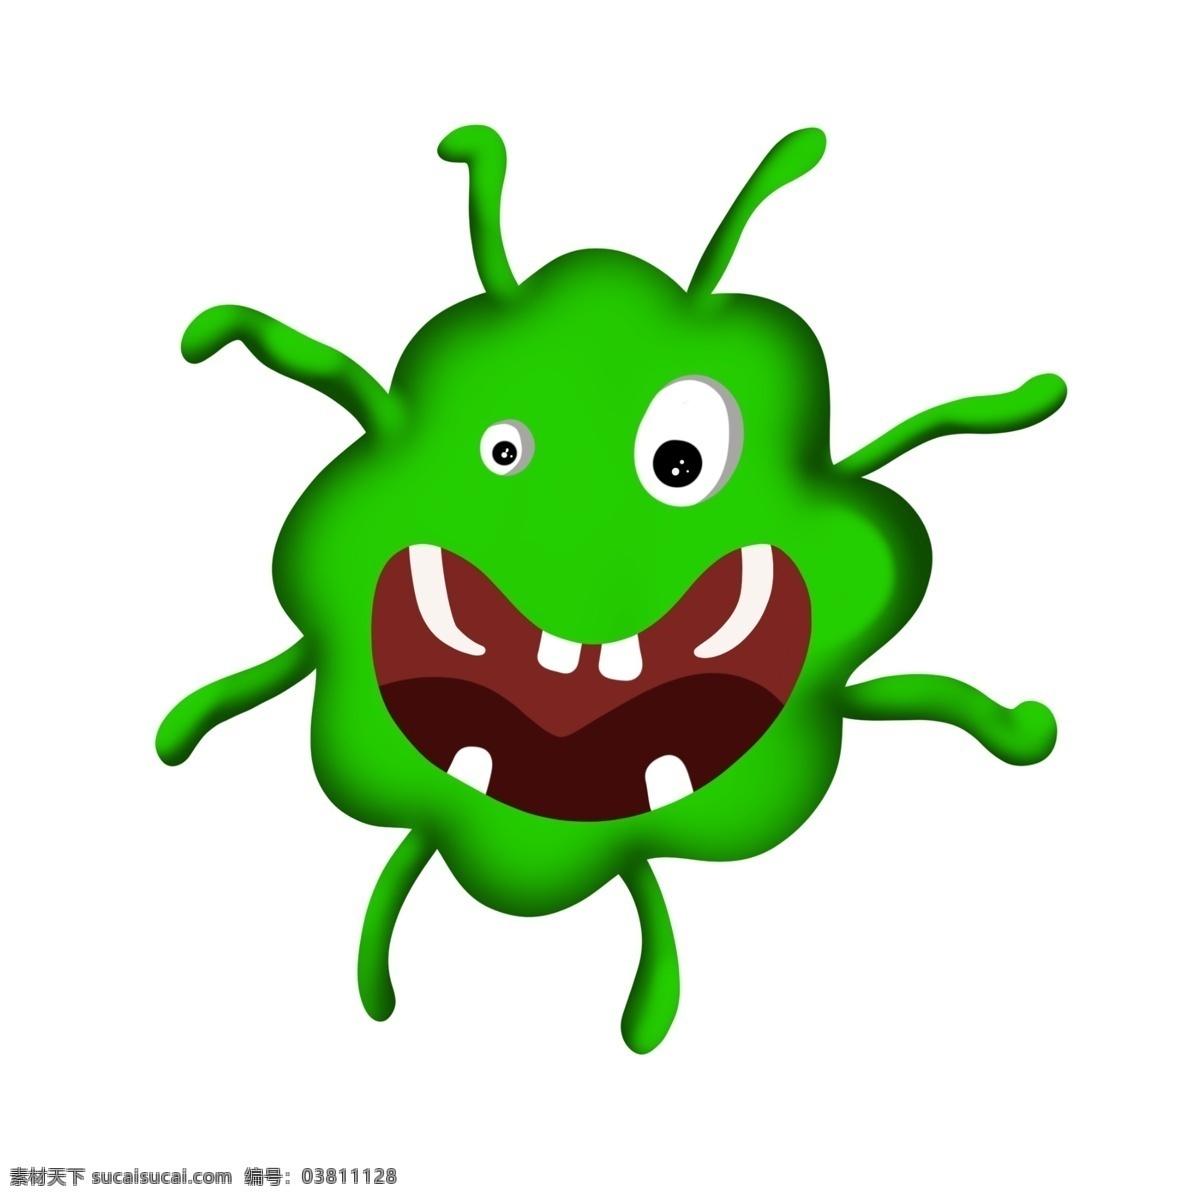 绿色 细菌 卡通 插画 绿色的细菌 卡通插画 细菌插画 病菌 细胞膜 细胞质 核糖体 单细胞生物